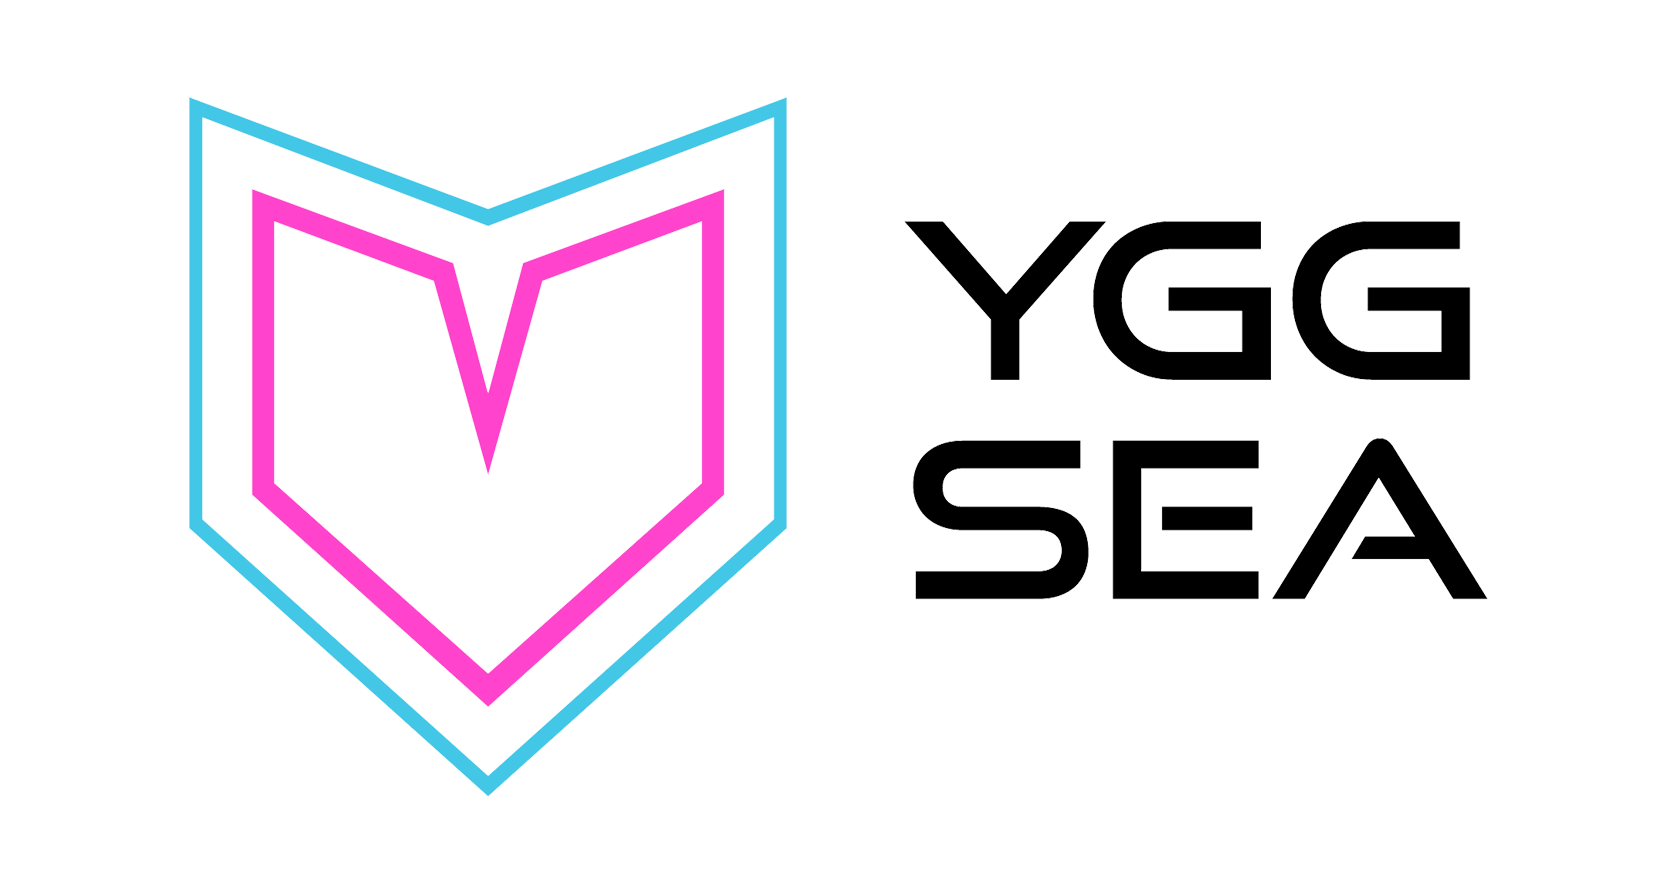 YGGsea-Logo